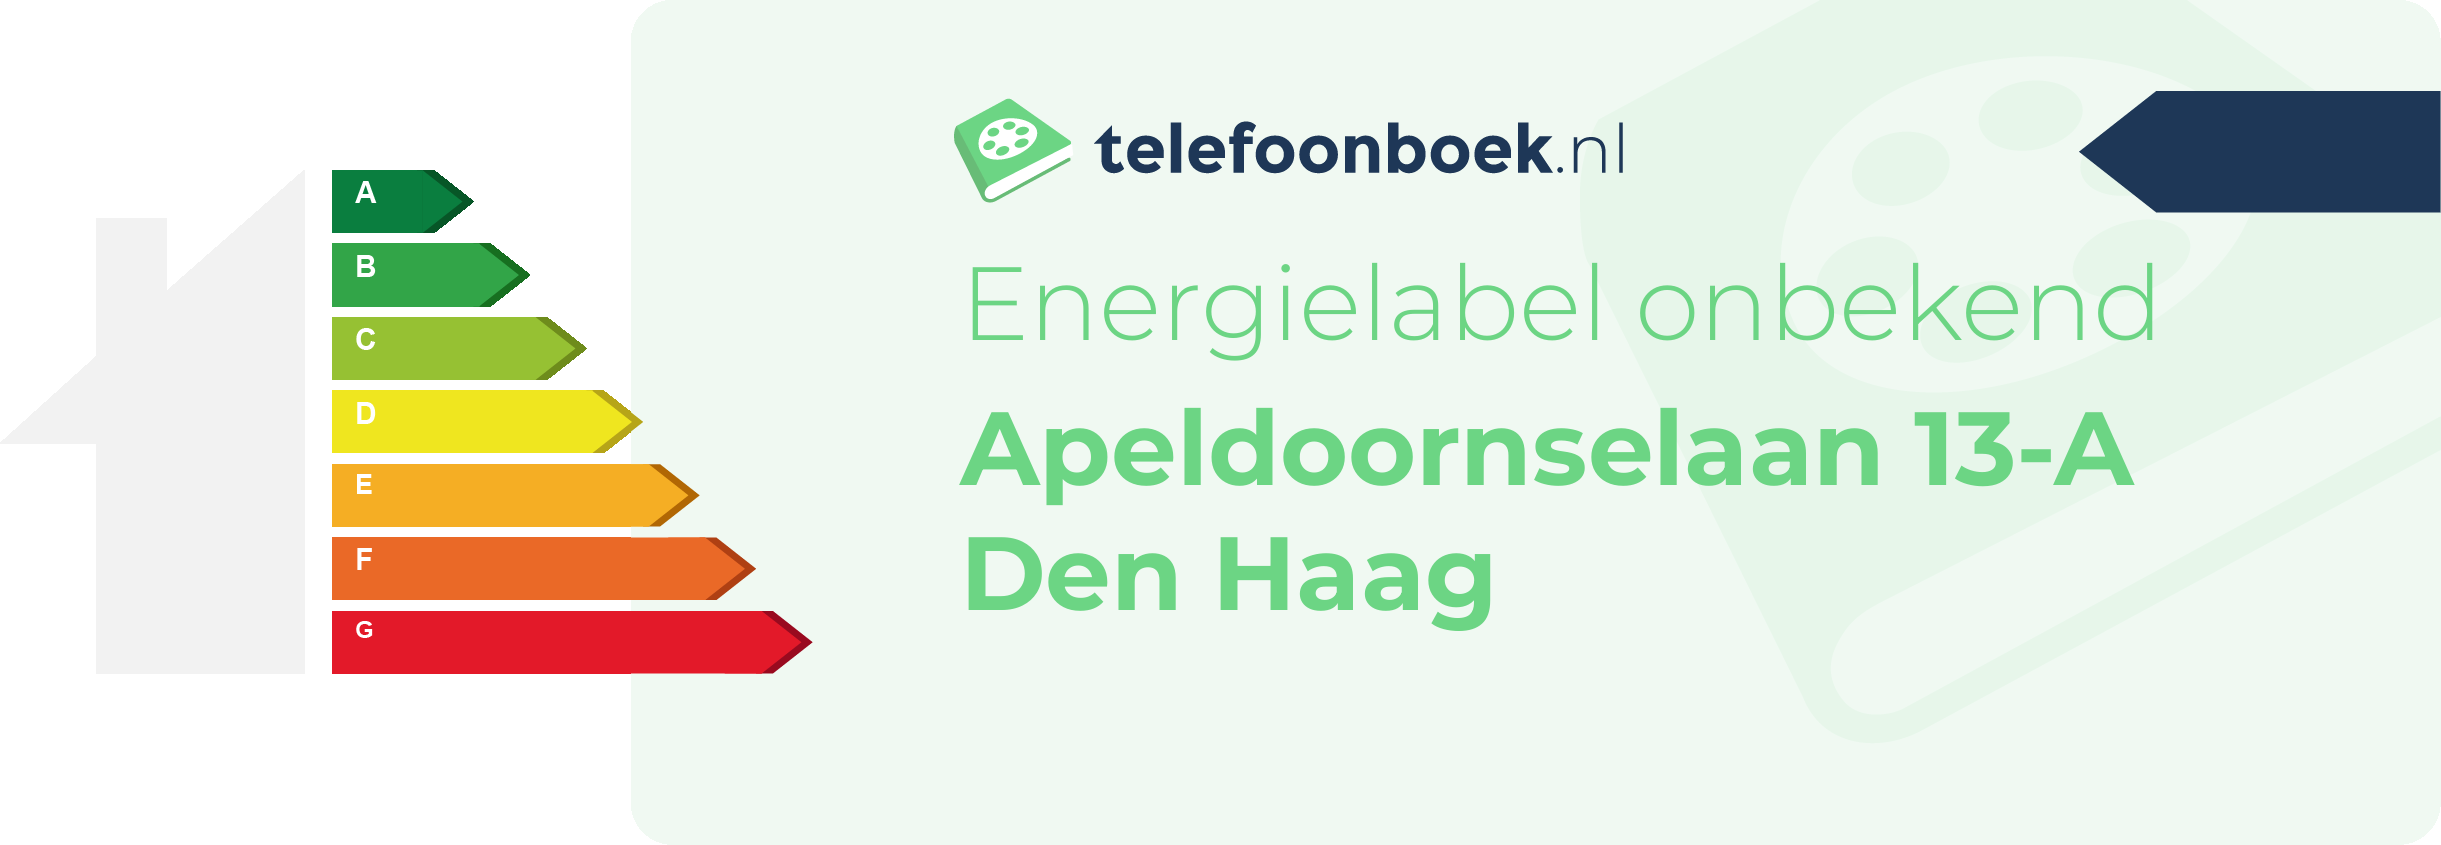 Energielabel Apeldoornselaan 13-A Den Haag